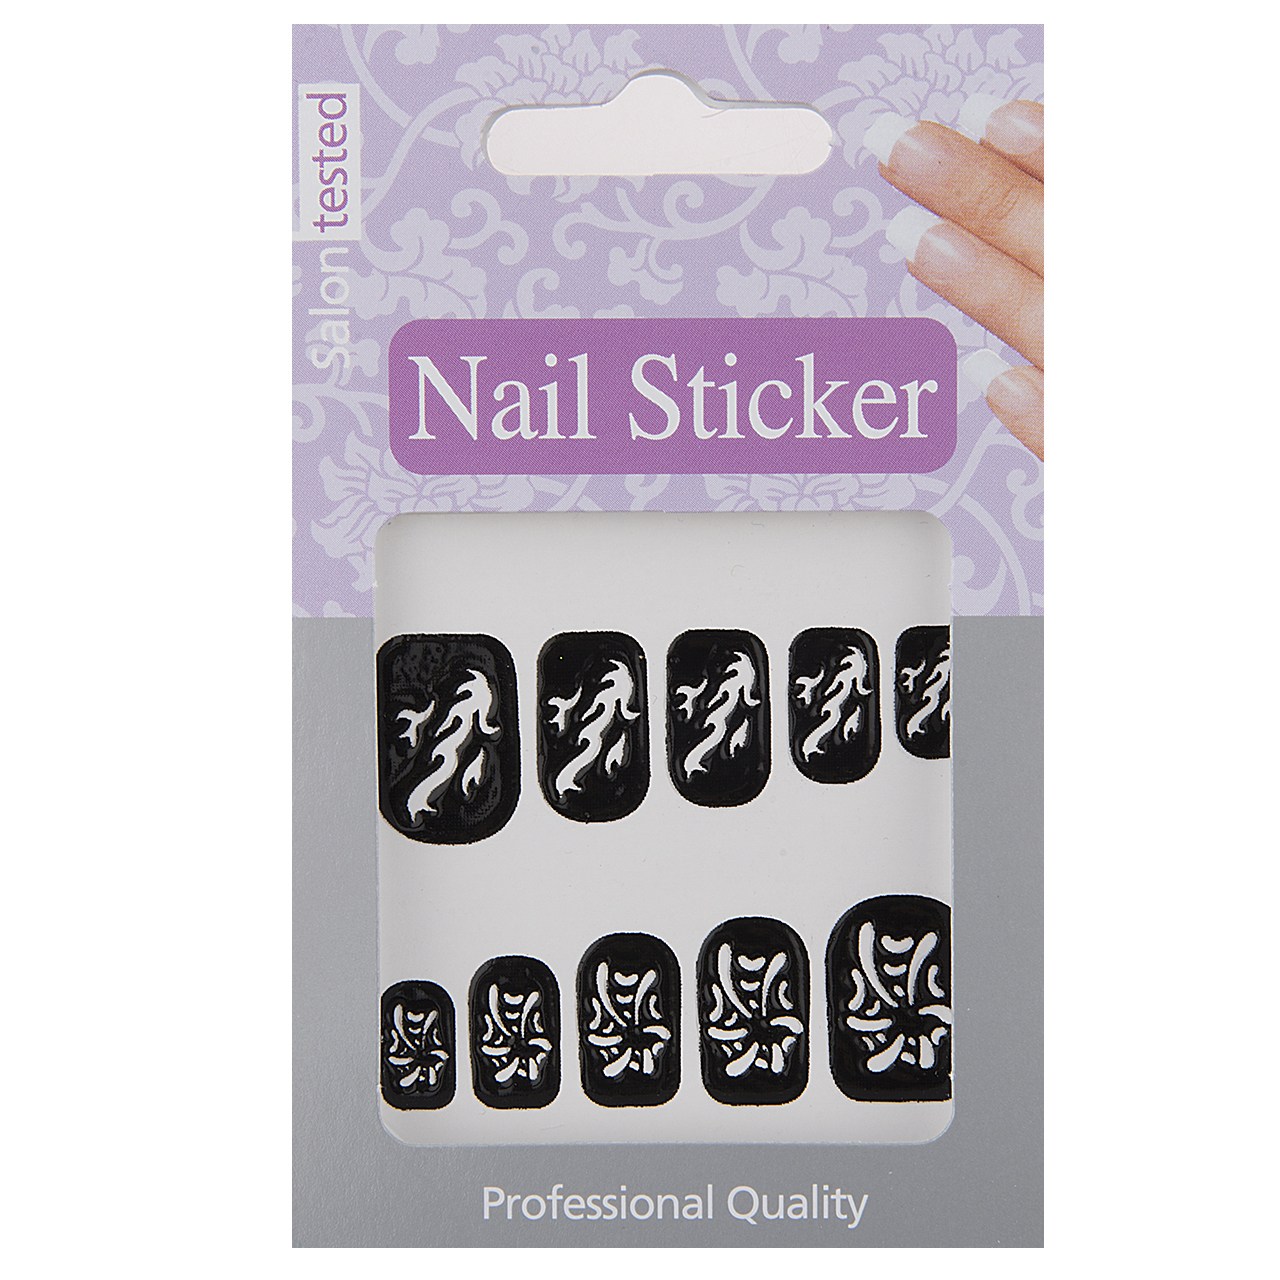 برچسب ناخن تریتون سری Nail Sticker مدل STENOIL-02